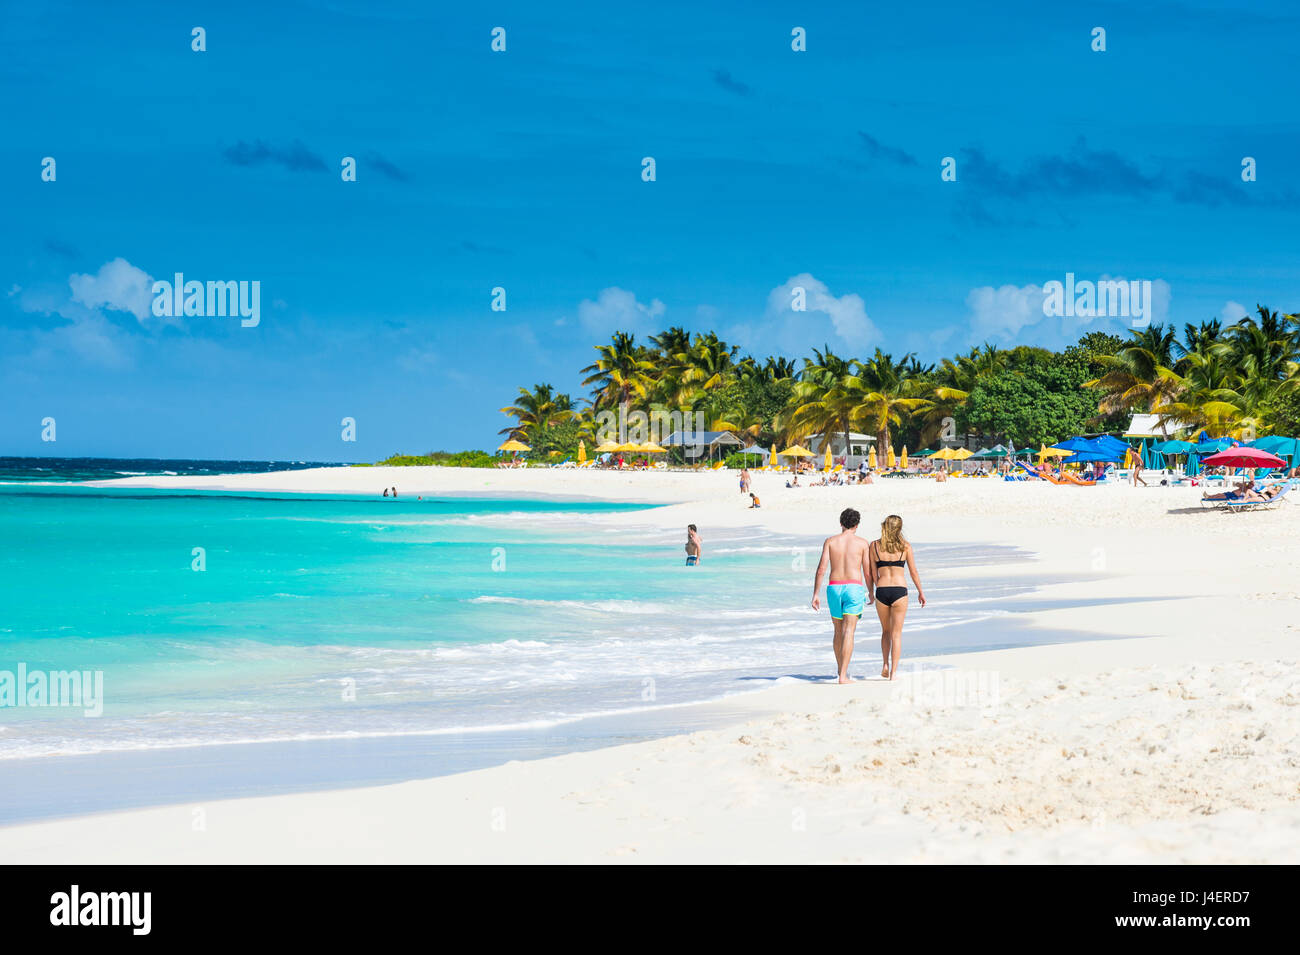 Couple walking on world class Shoal Bay East Beach, Anguilla, territoire britannique d'Outremer, Antilles, Caraïbes, Amérique Centrale Banque D'Images